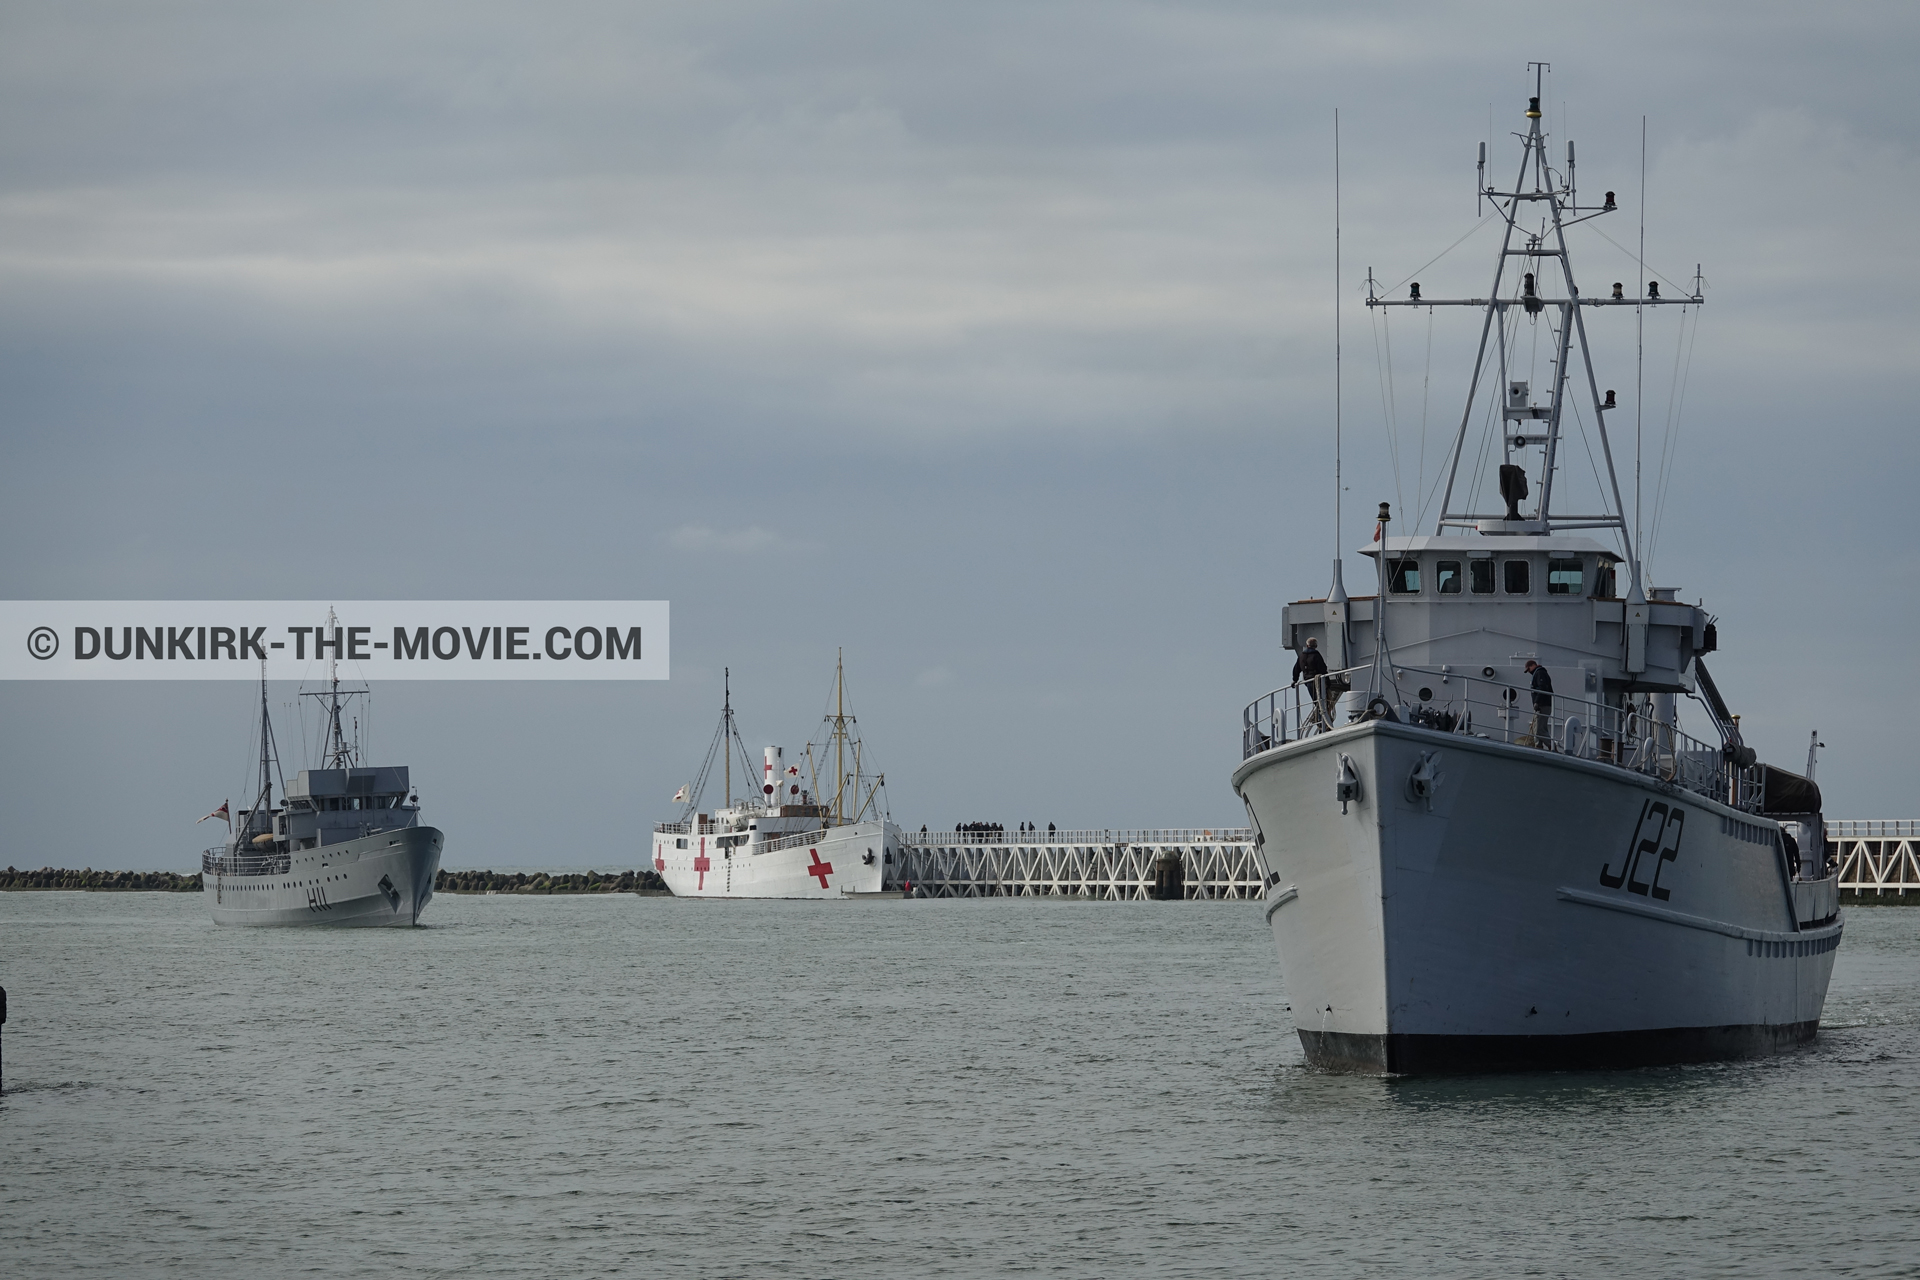 Fotos con barco, H11 - MLV Castor, J22 -Hr.Ms. Naaldwijk, muelle del ESTE, mares calma, M/S Rogaland,  durante el rodaje de la película Dunkerque de Nolan